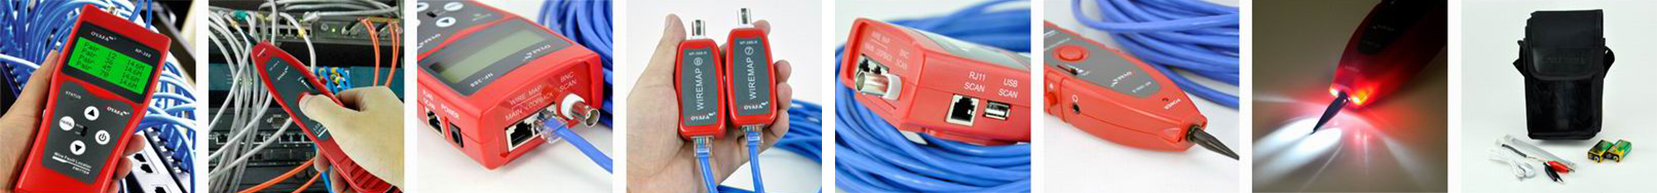 Noyafa NF-388 RJ45 RJ11 BNC USB LCD cable tracer RJ45 cable length tester 5